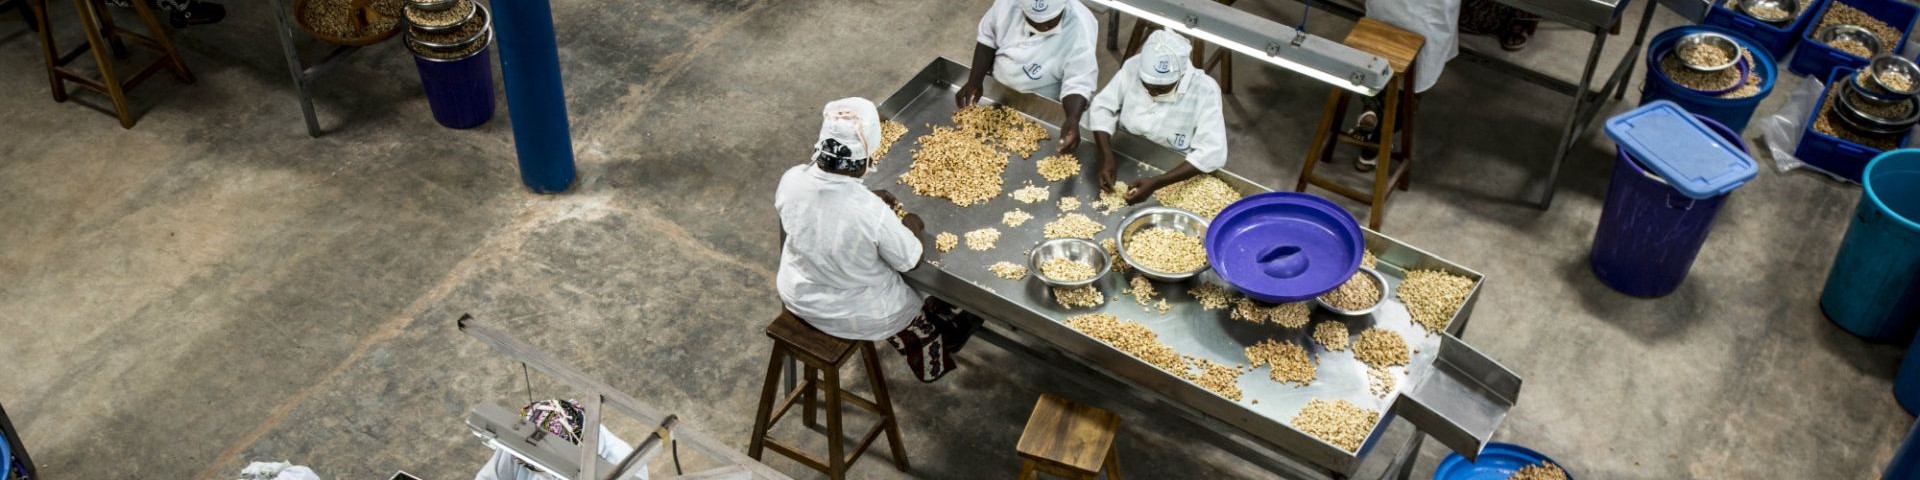 Menschen arbeiten in einer Cashewfabrik.